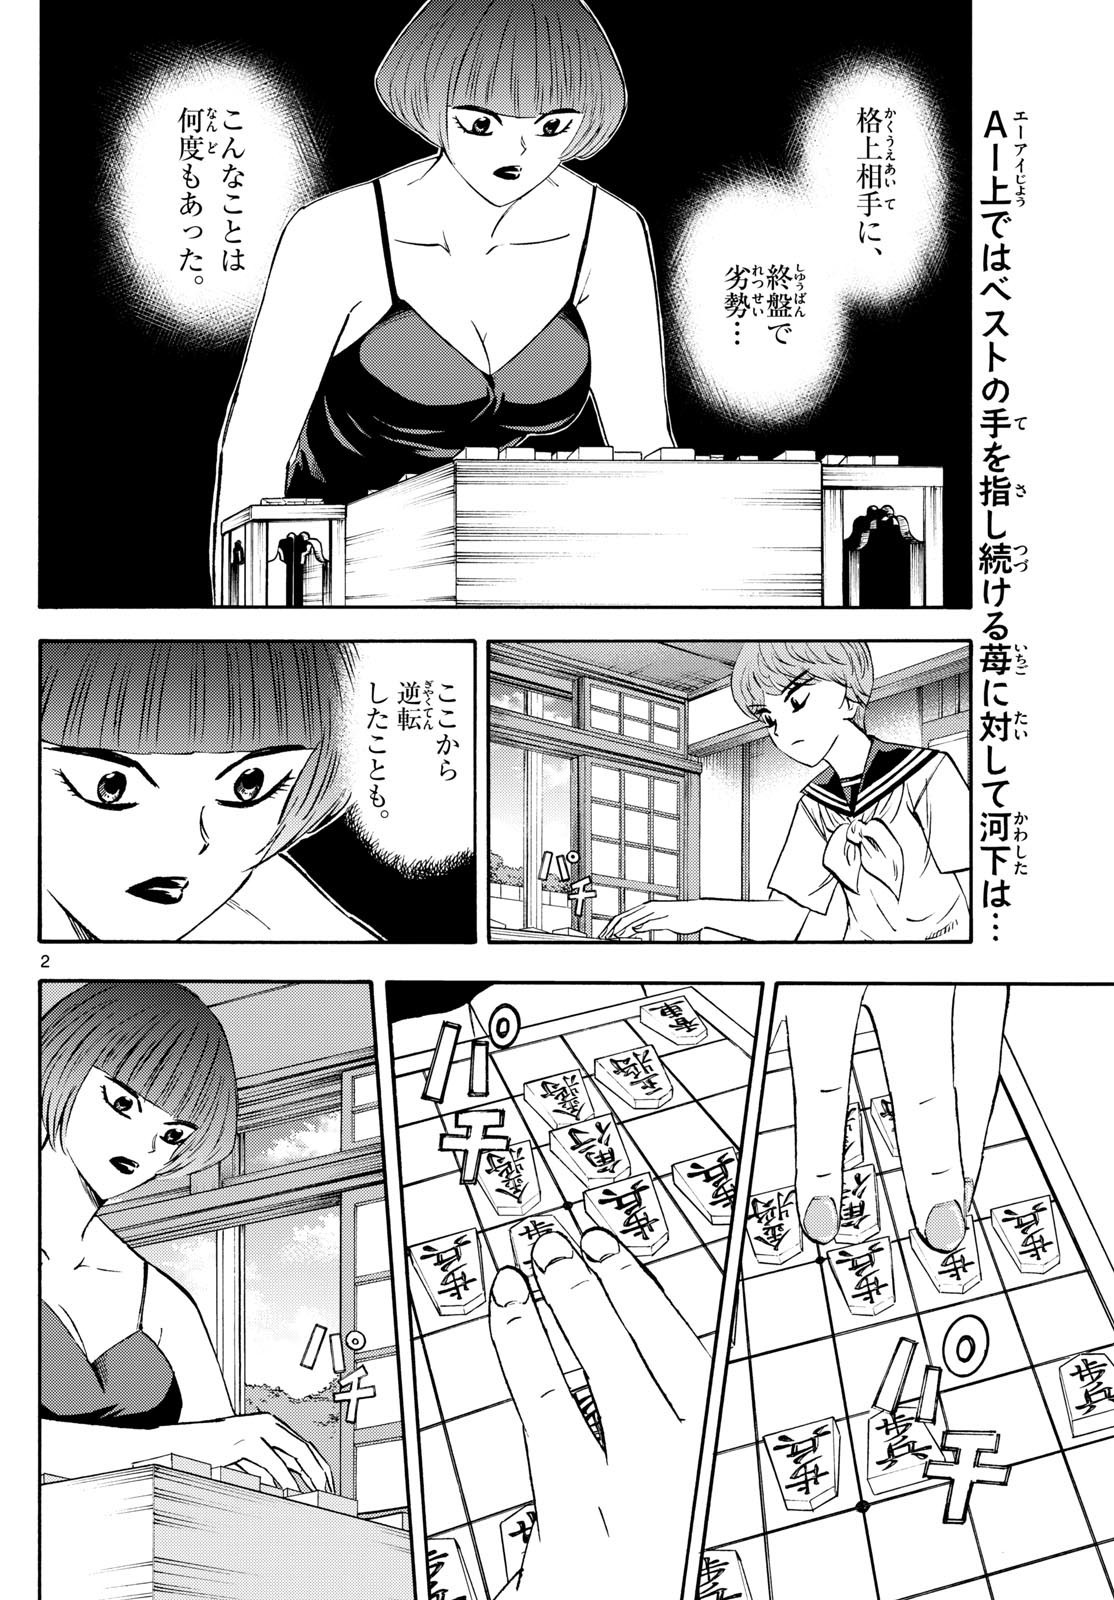 Ryu-to-Ichigo - Chapter 201 - Page 2